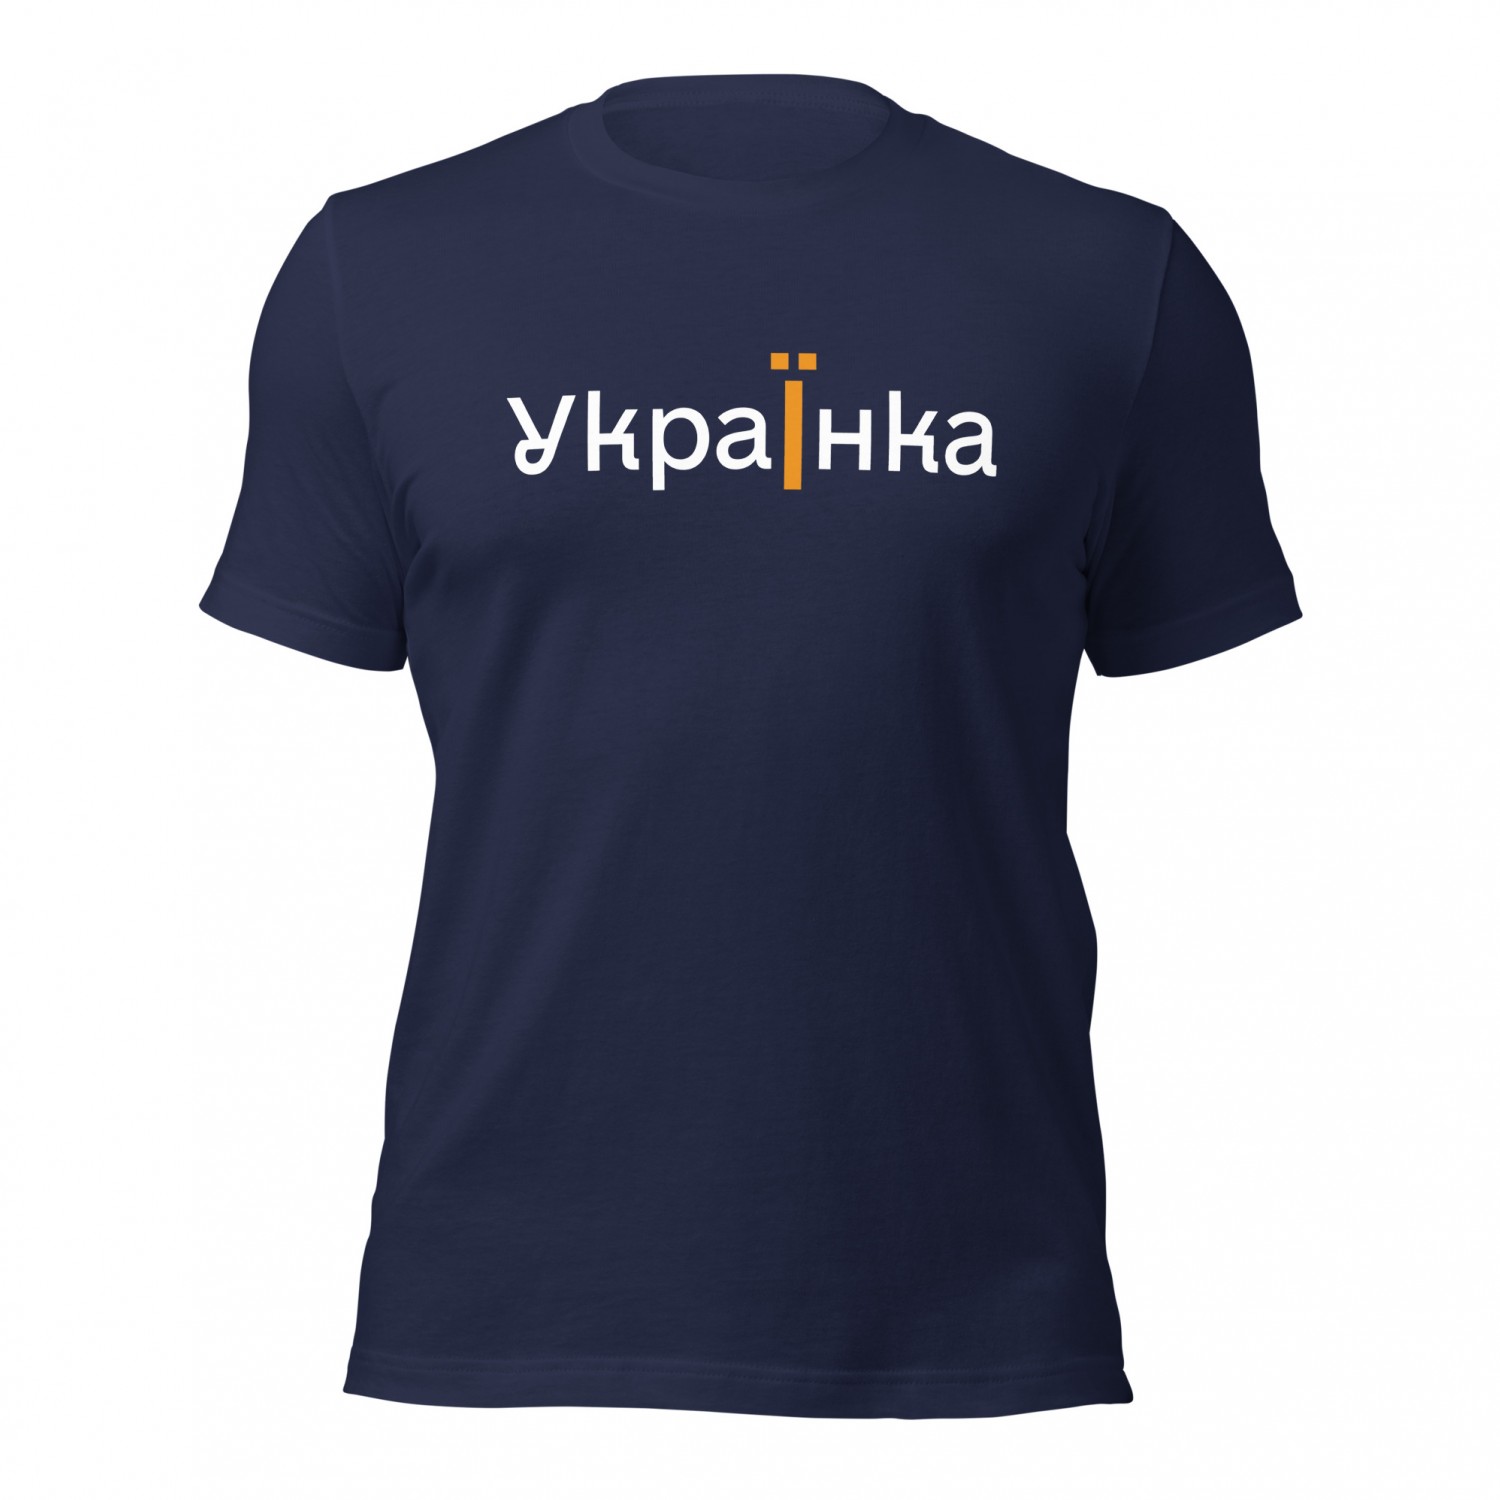 Kup ukraińską koszulkę